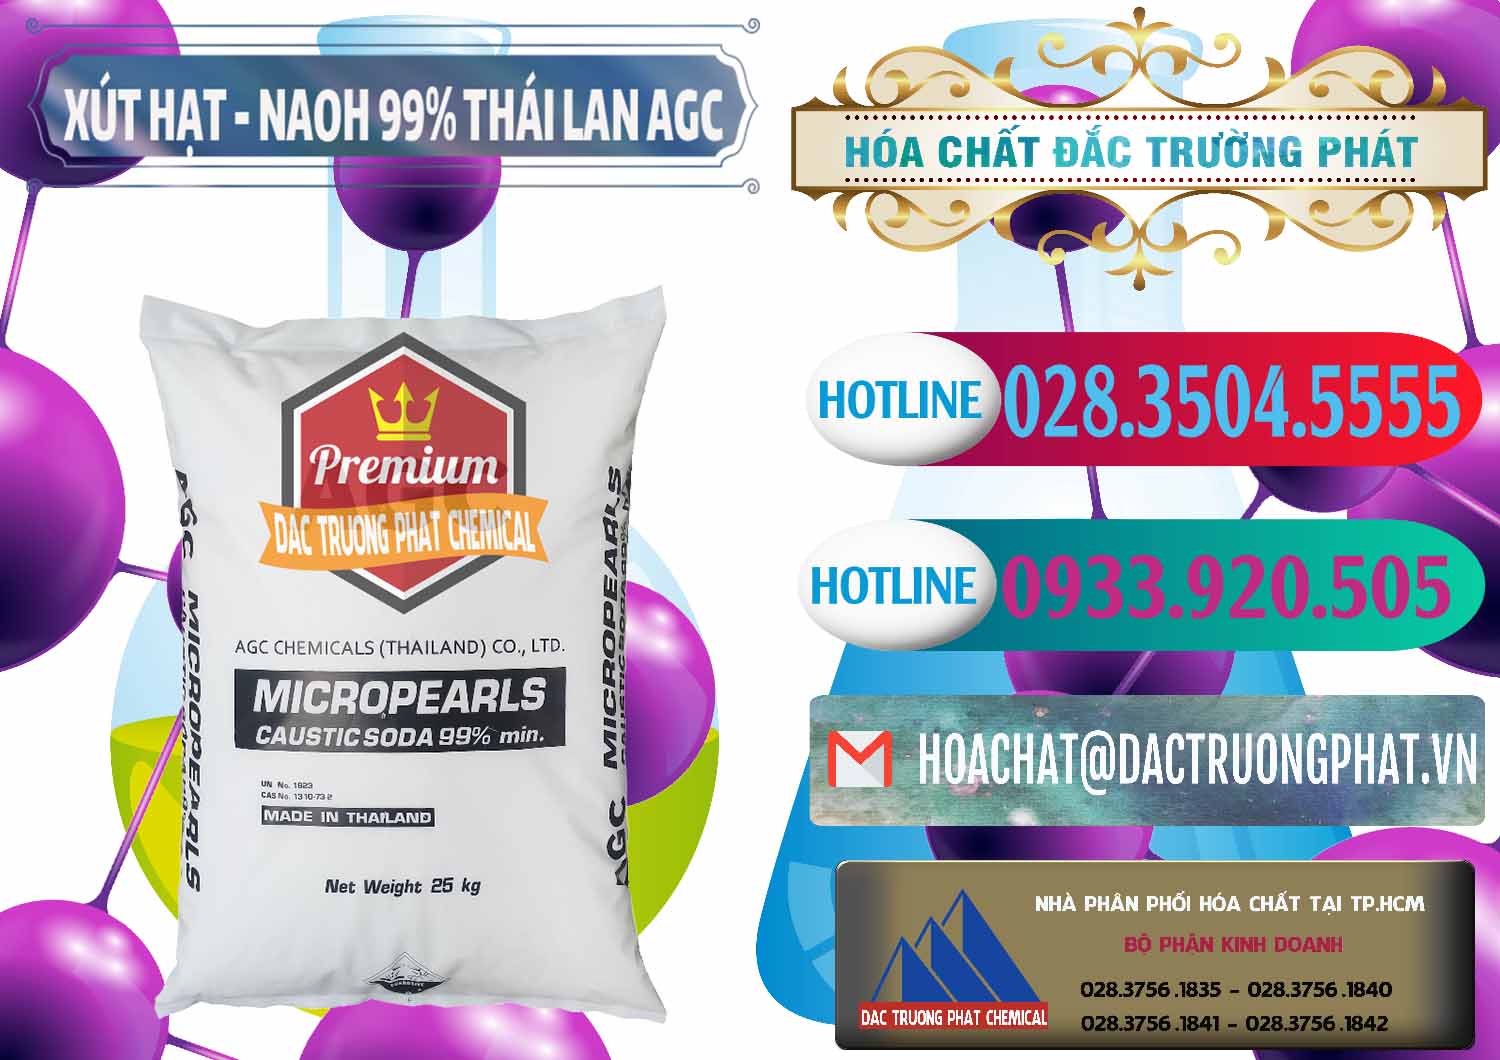 Đơn vị chuyên cung cấp ( bán ) Xút Hạt - NaOH Bột 99% AGC Thái Lan - 0168 - Bán & phân phối hóa chất tại TP.HCM - truongphat.vn